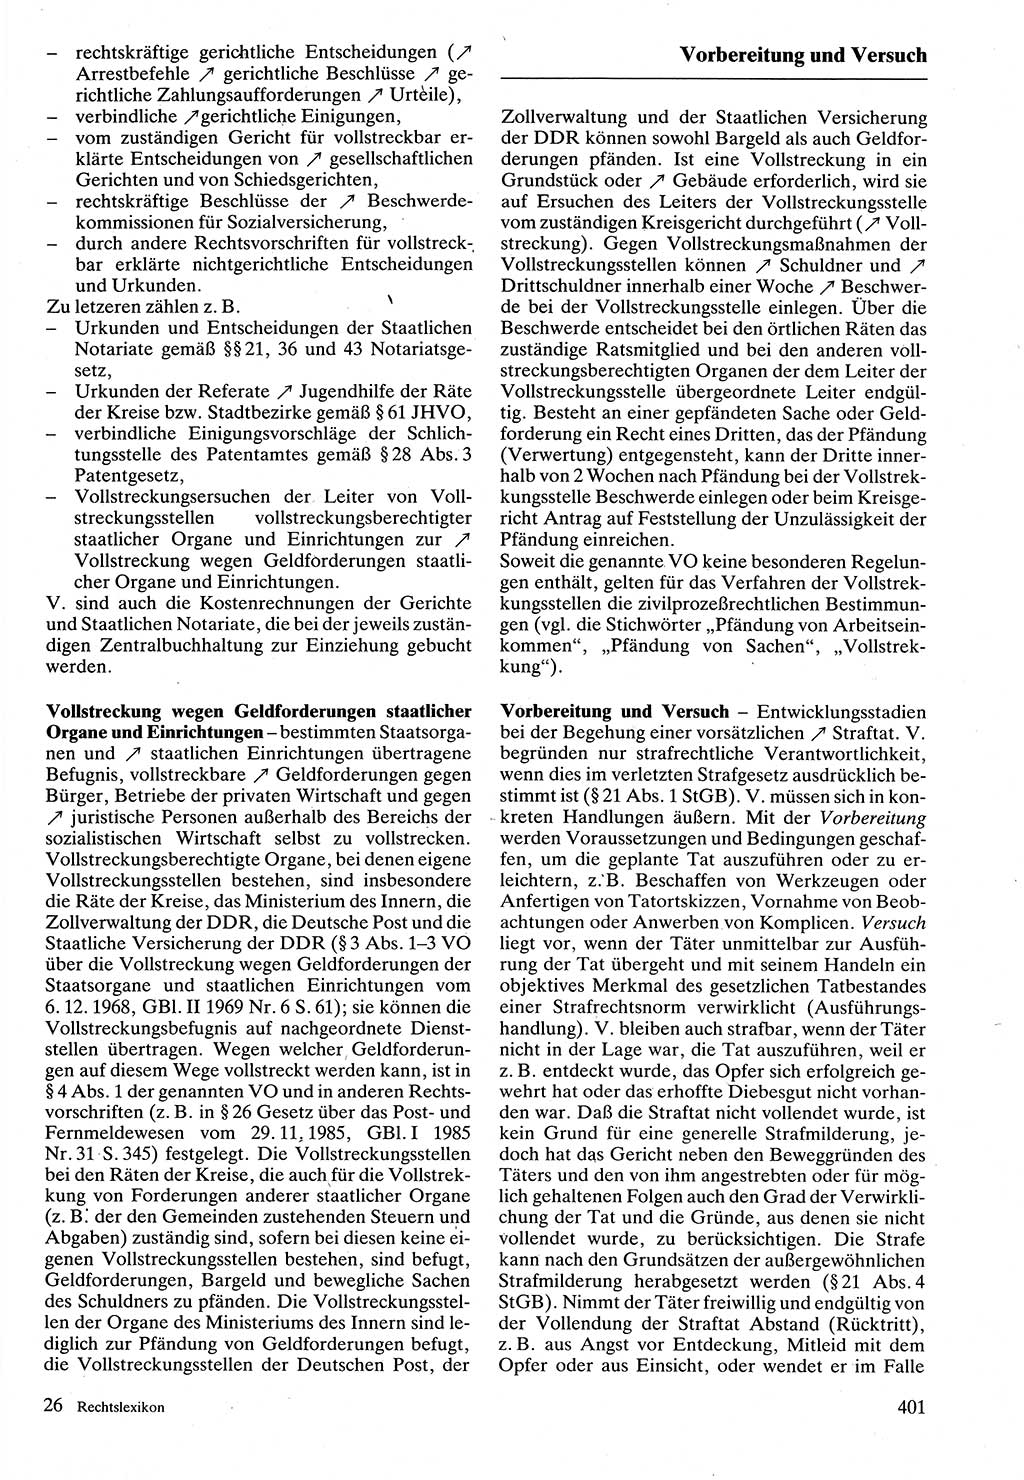 Rechtslexikon [Deutsche Demokratische Republik (DDR)] 1988, Seite 401 (Rechtslex. DDR 1988, S. 401)